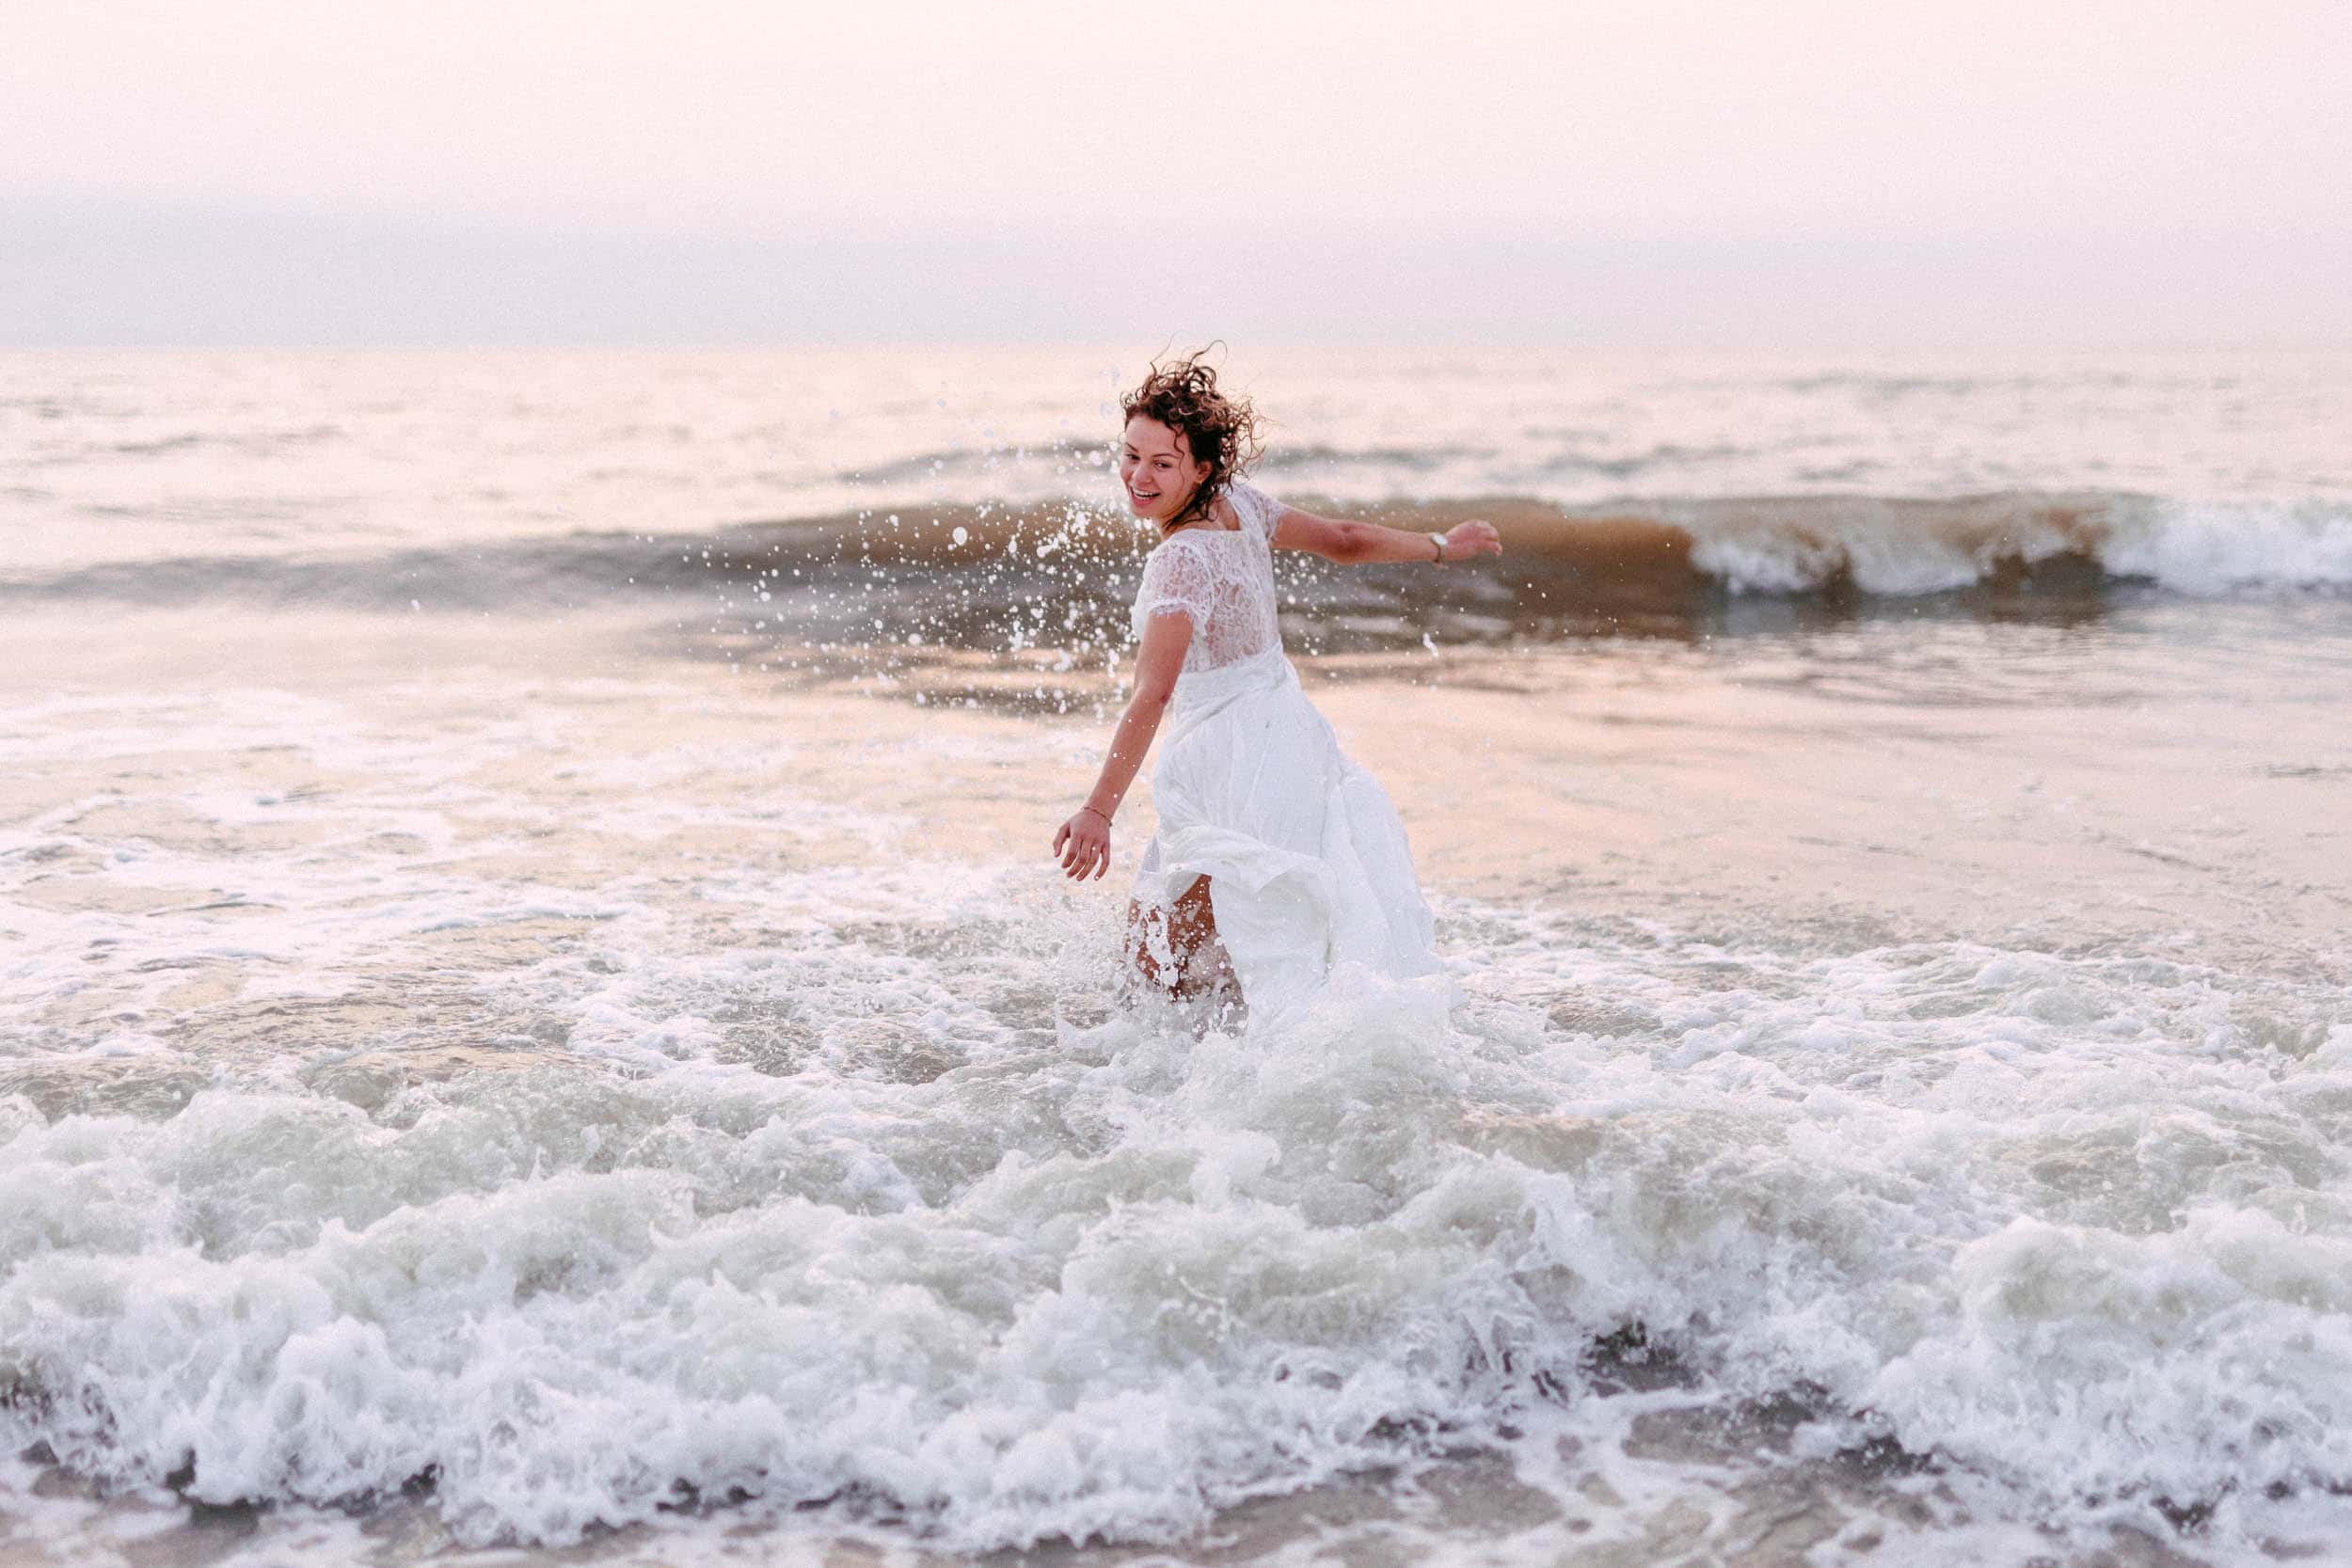 Een vrouw in een witte jurk die het concept van "Trash The Dress" omarmt door zichzelf onbevreesd in de oceaan onder te dompelen.